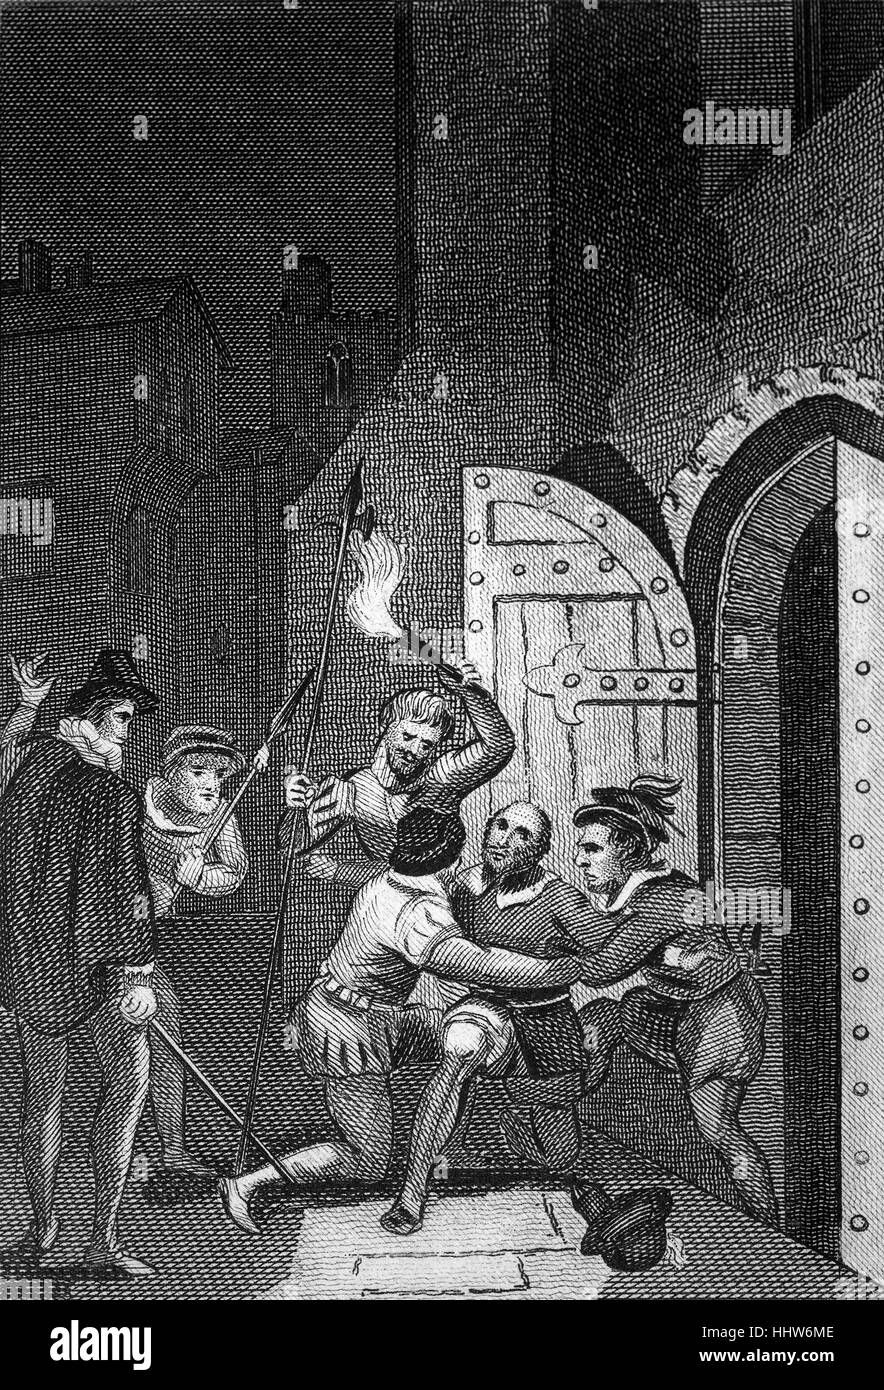 Guy Fawkes (1570-1606), war ein Mitglied einer Gruppe von provinziellen englischen Katholiken, die fehlgeschlagenen Gunpowder Plot von 1605 geplant. Fawkess letzte Rolle in der Handlung war ans Licht, die Sicherung und die Flucht über die Thames.He auf seiner Station spät in der vorherigen Nacht bewaffnet mit einem Slow Match und eine Uhr nahm. Er wurde gefunden, verlassen den Keller kurz nach Mitternacht und verhaftet. Im Inneren wurden die Fässer Schießpulver entdeckt unter Stapeln von Brennholz und Kohle versteckt. Stockfoto